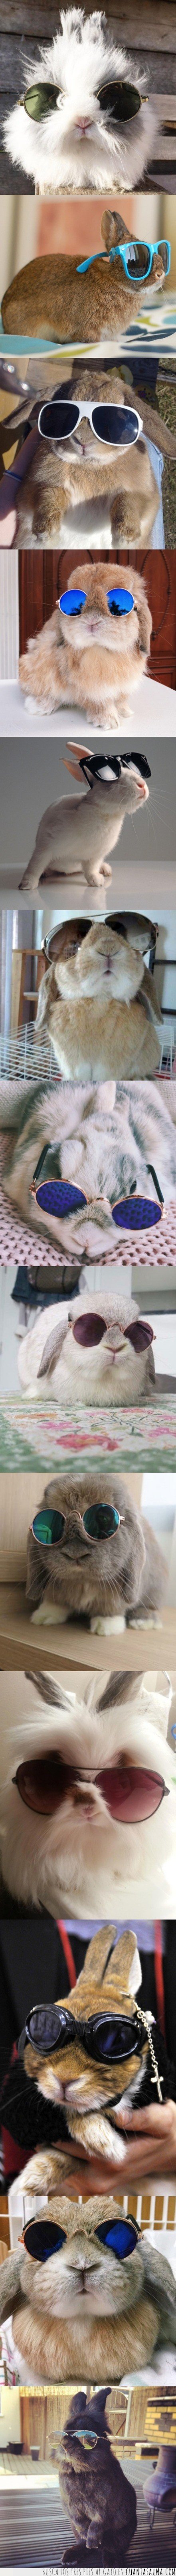 conejos,gafas